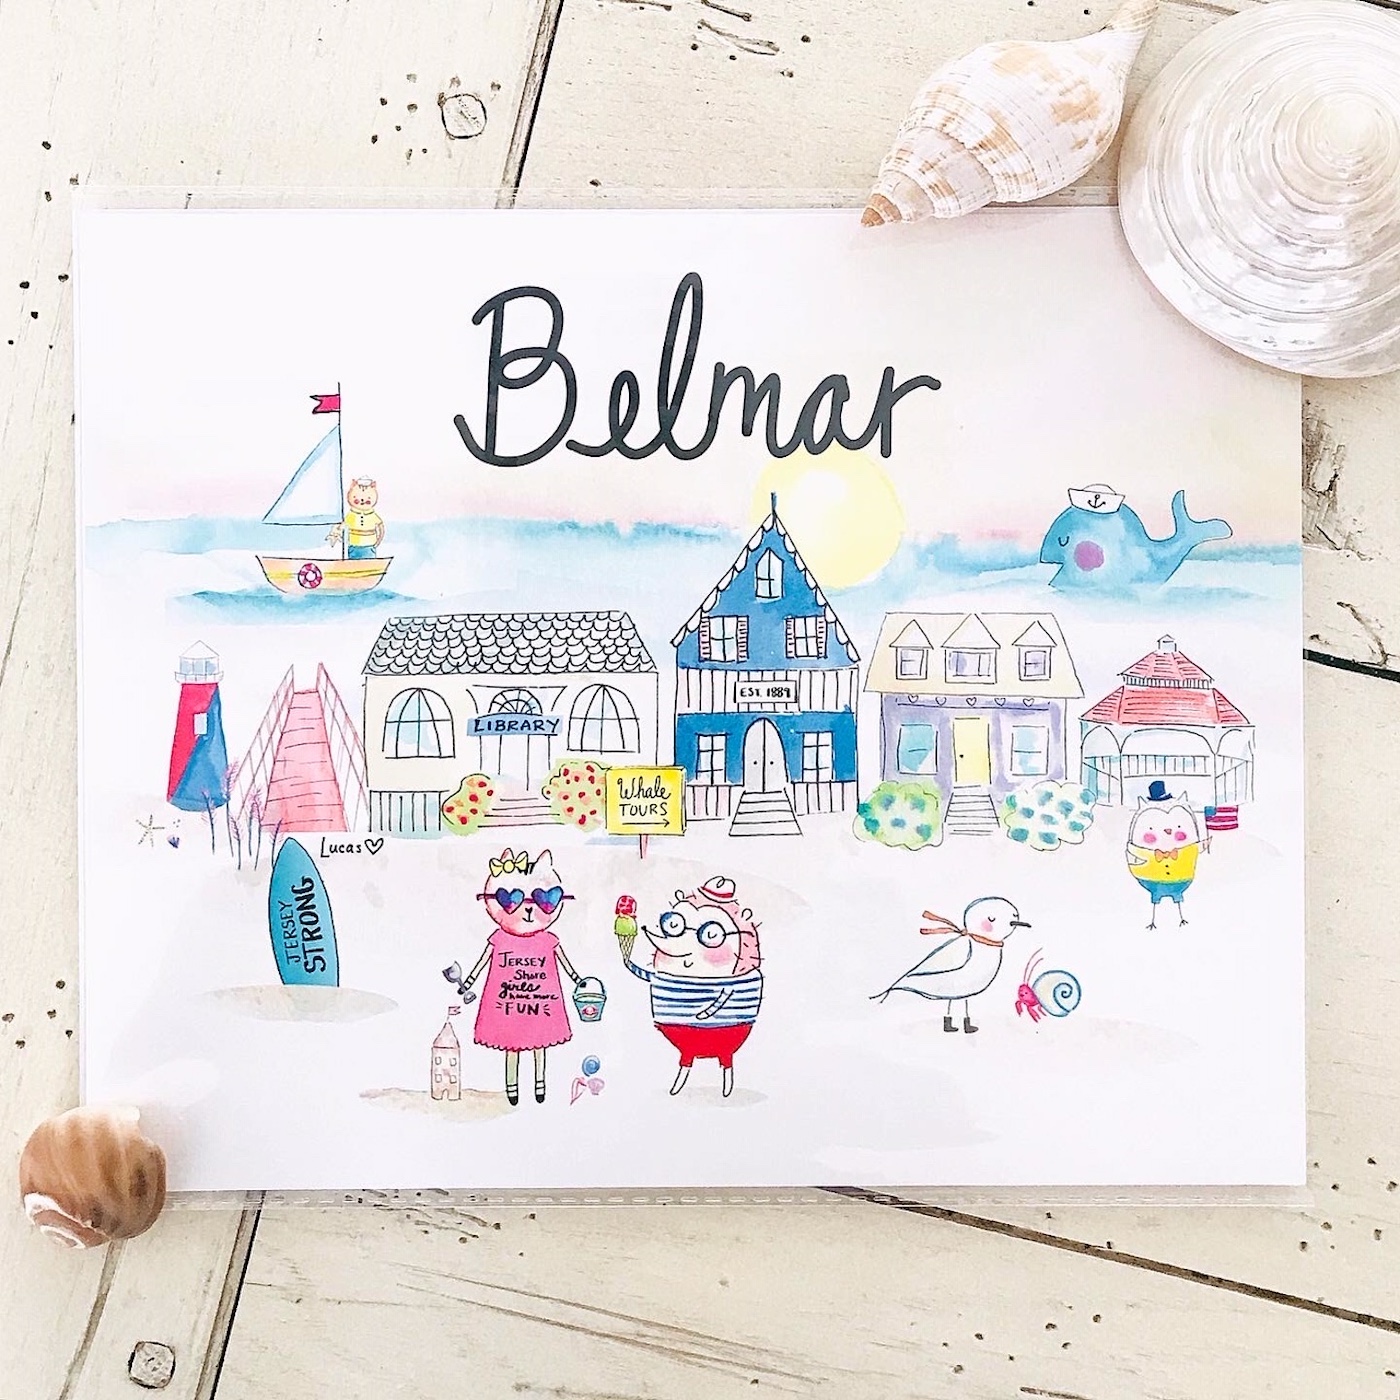 © Ashley Lucas Belmar whimsical watercolor painting of Belmar, seaside town